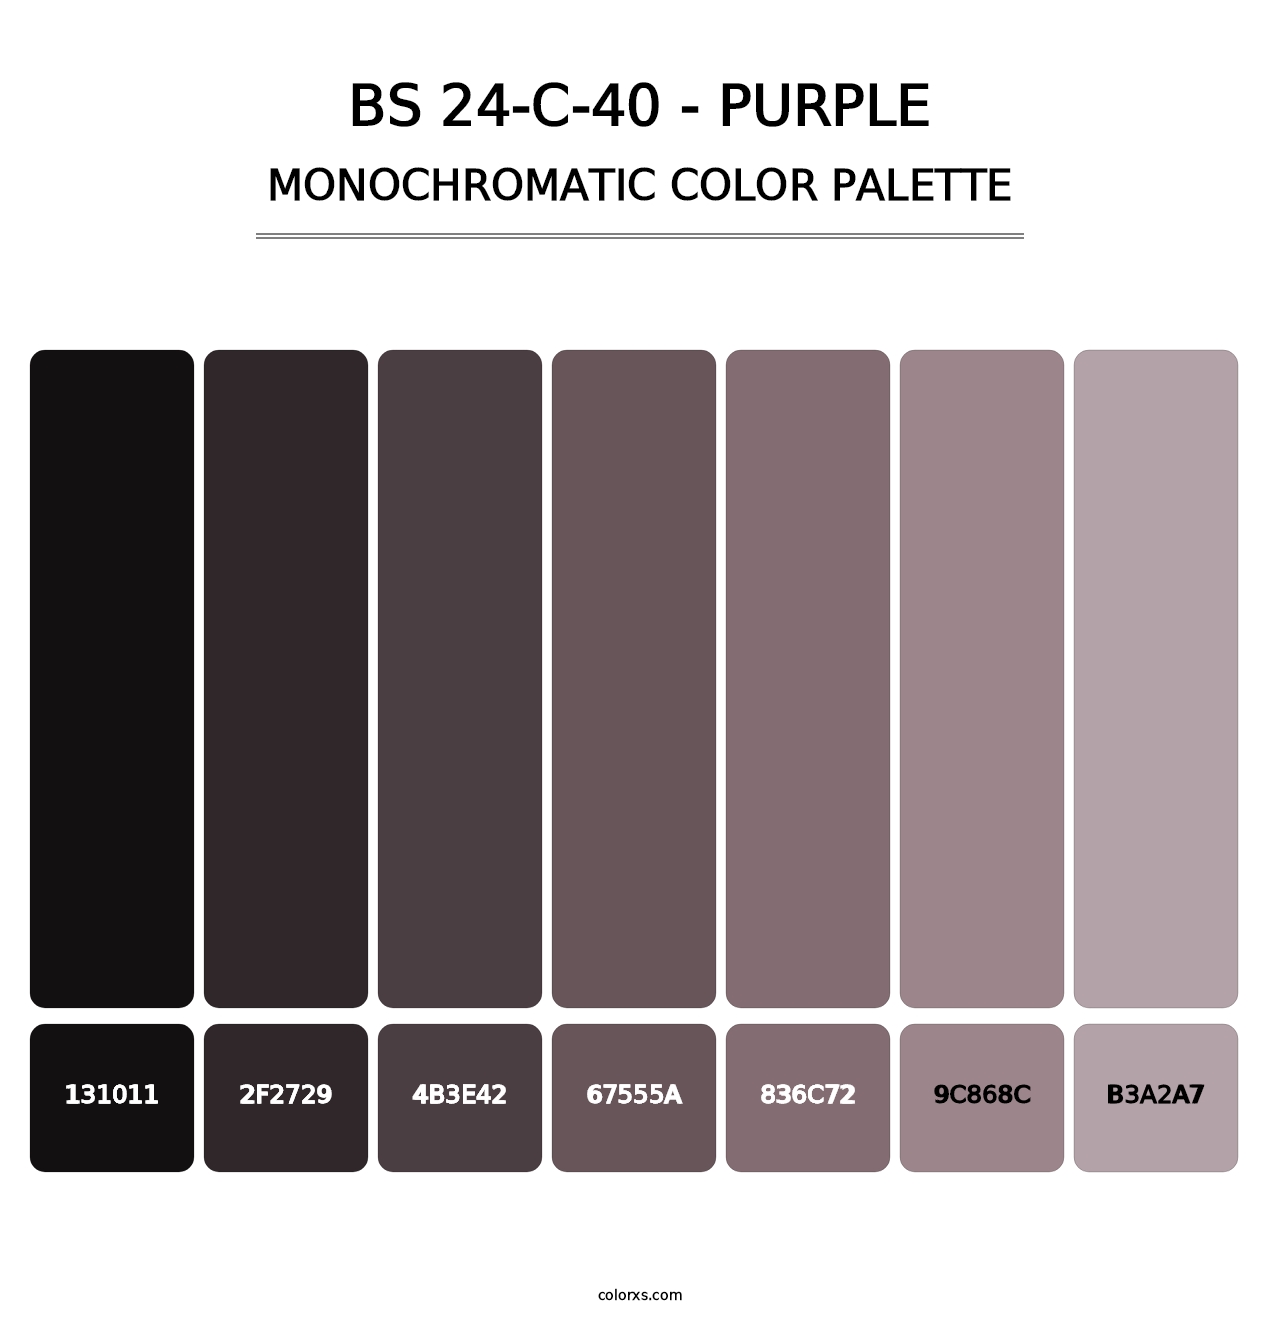 BS 24-C-40 - Purple - Monochromatic Color Palette